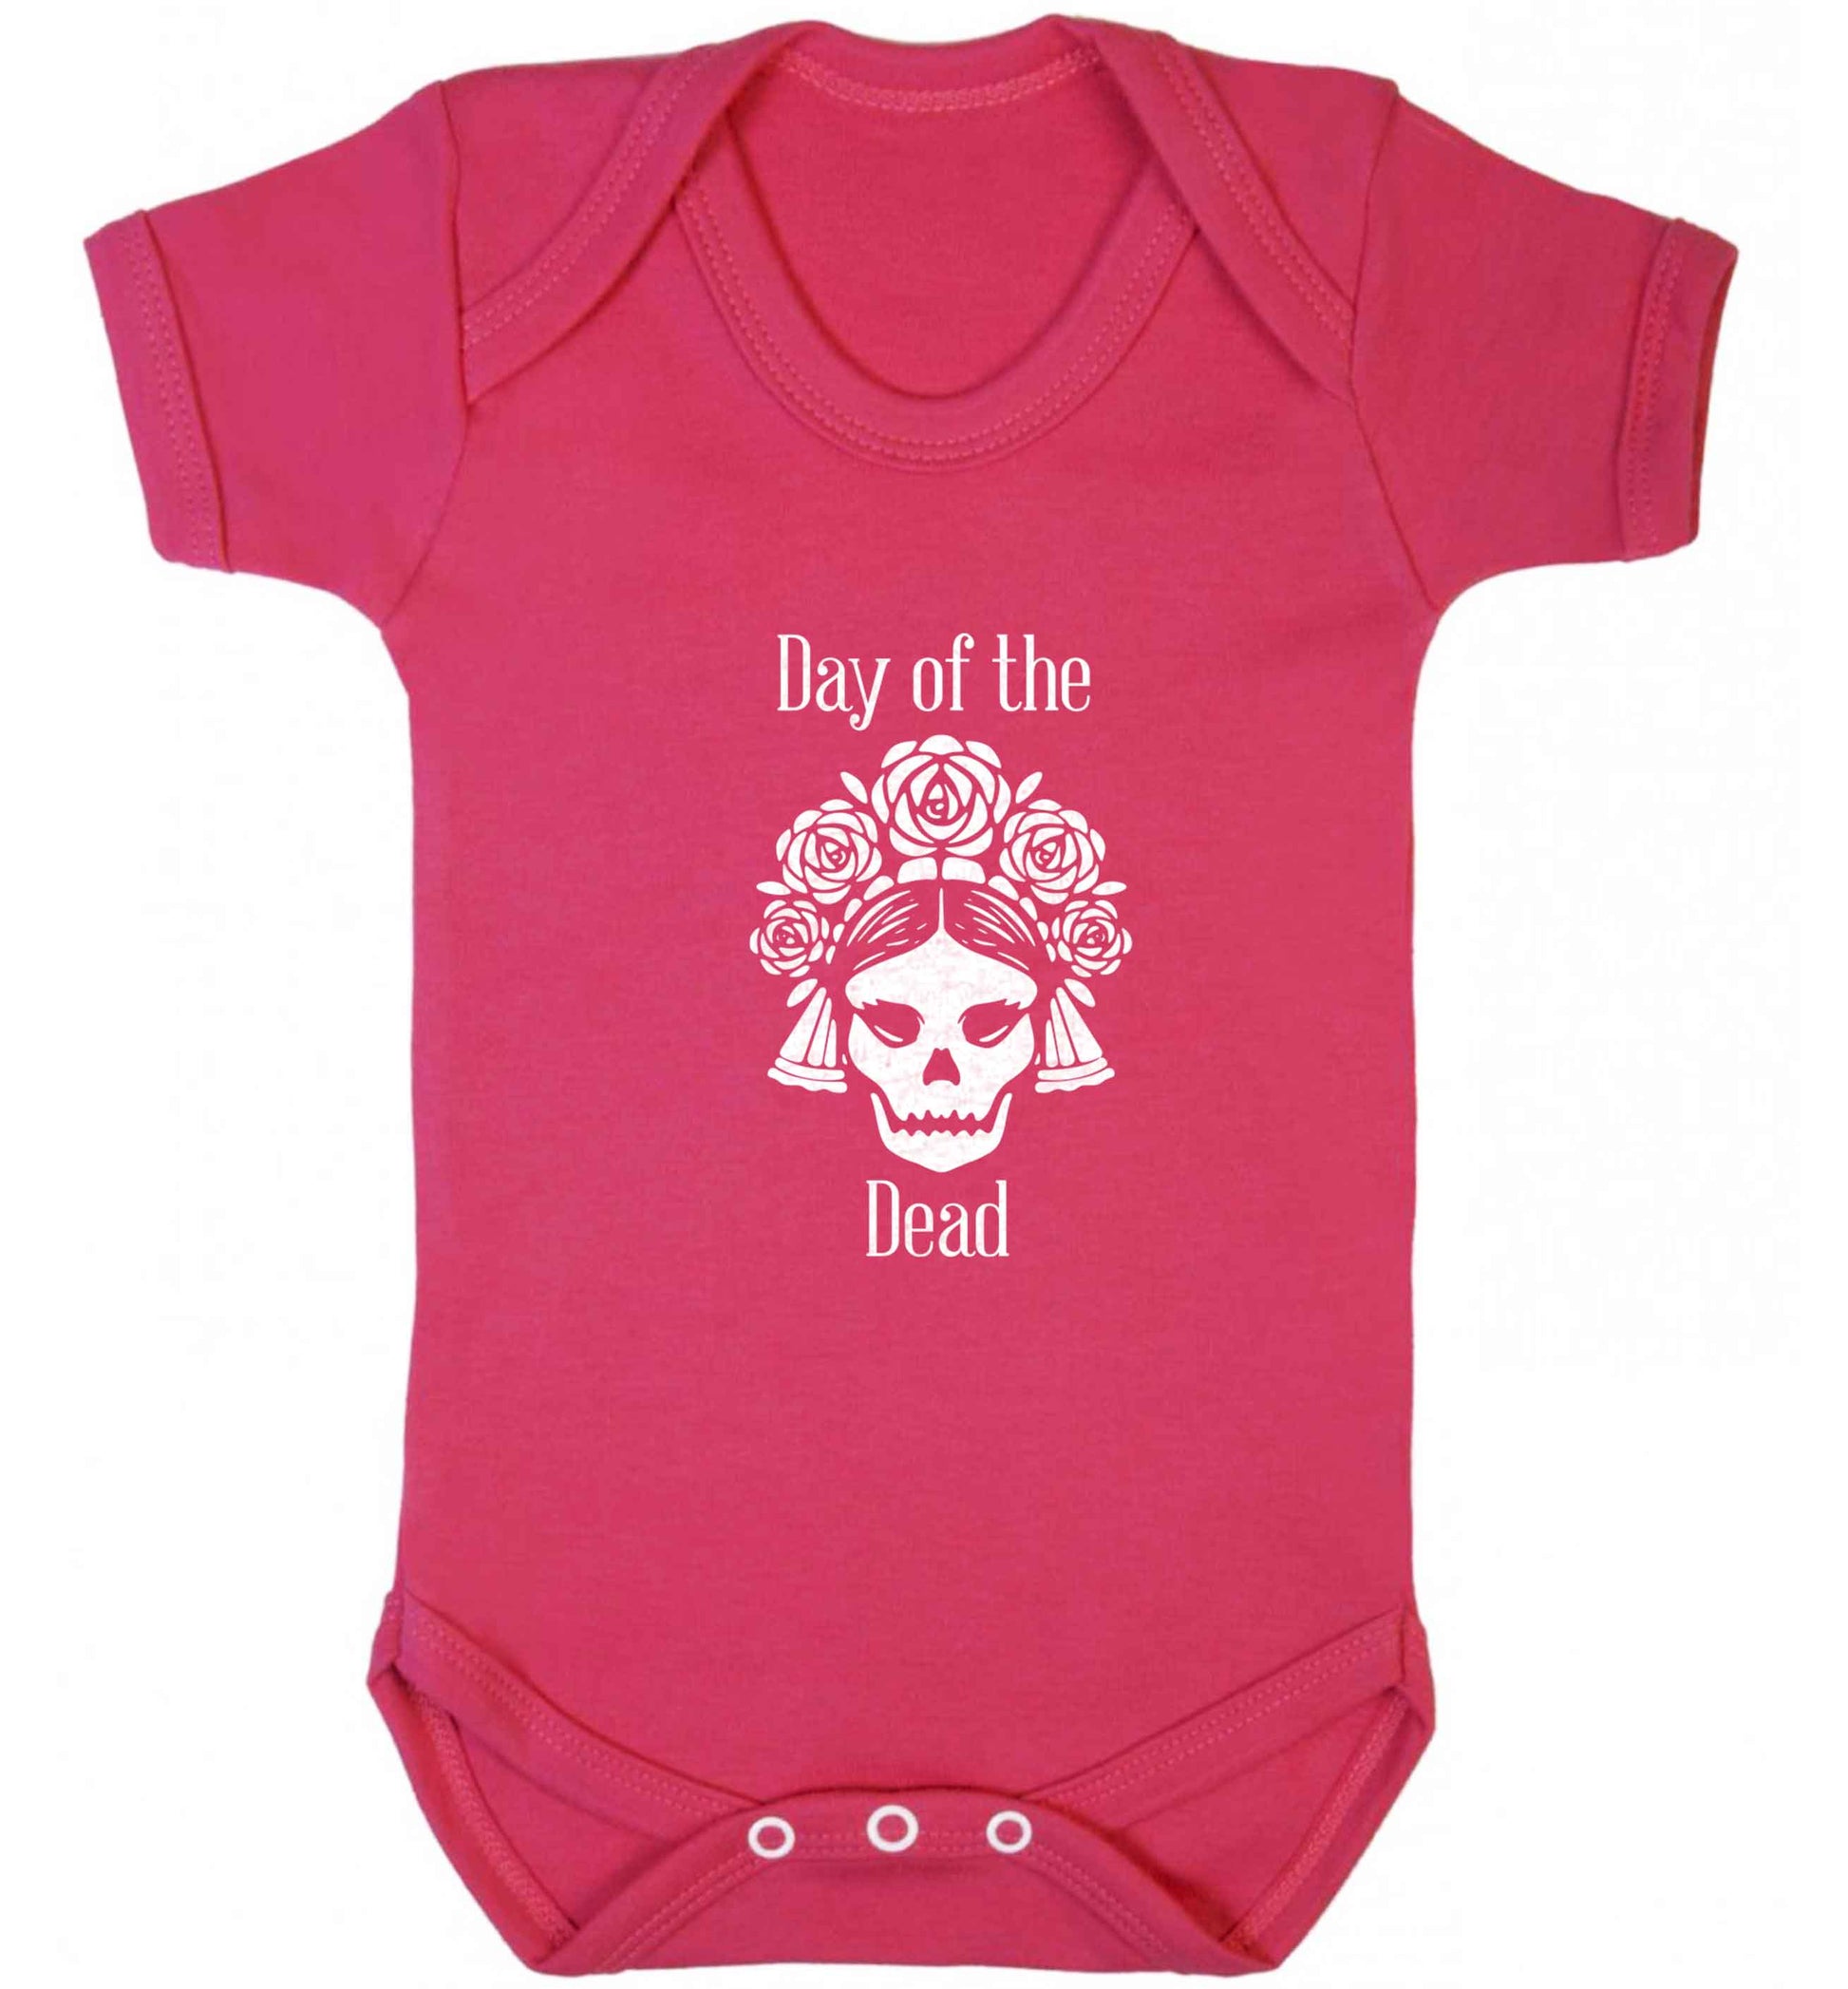 Day of the dead baby vest dark pink 18-24 months